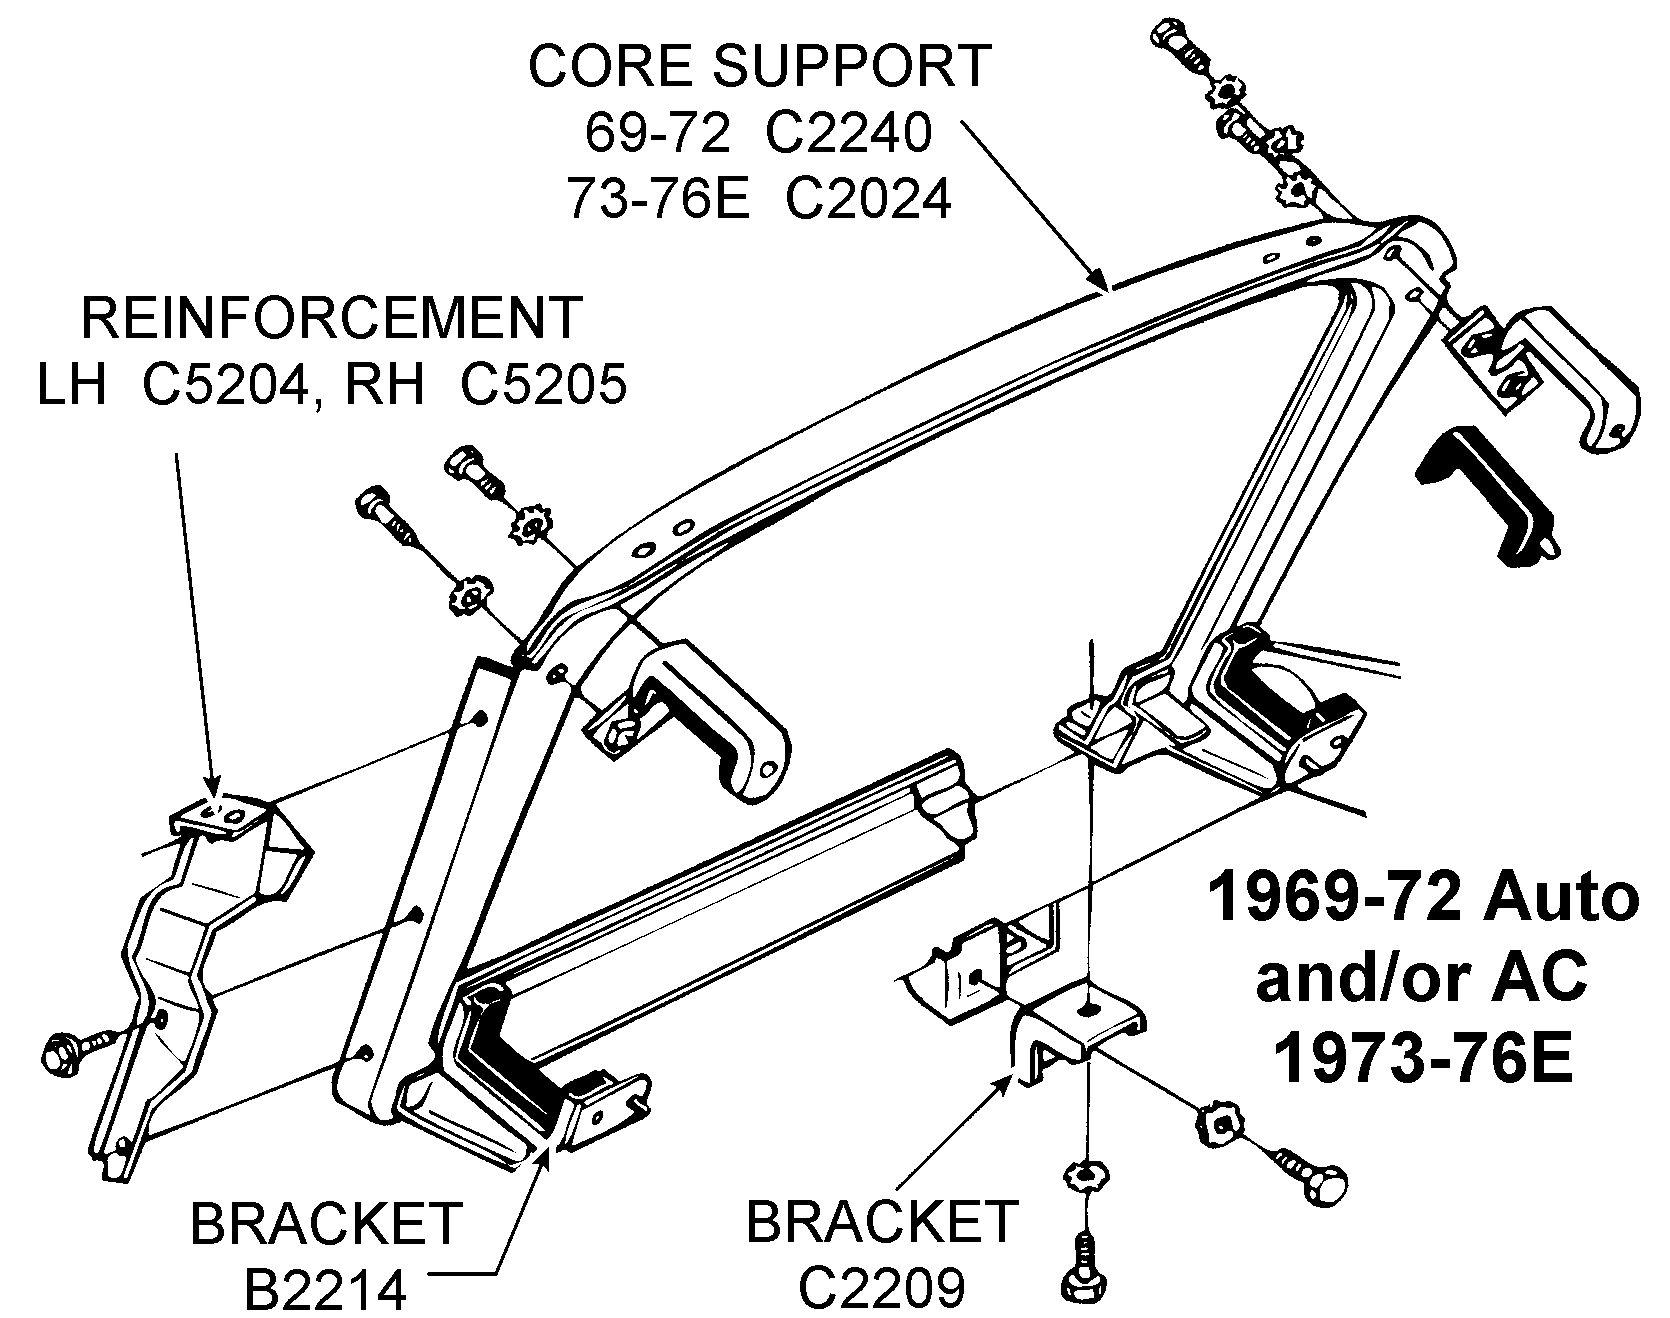 1969 72 Auto Core Support Diagram View Chicago Corvette Supply